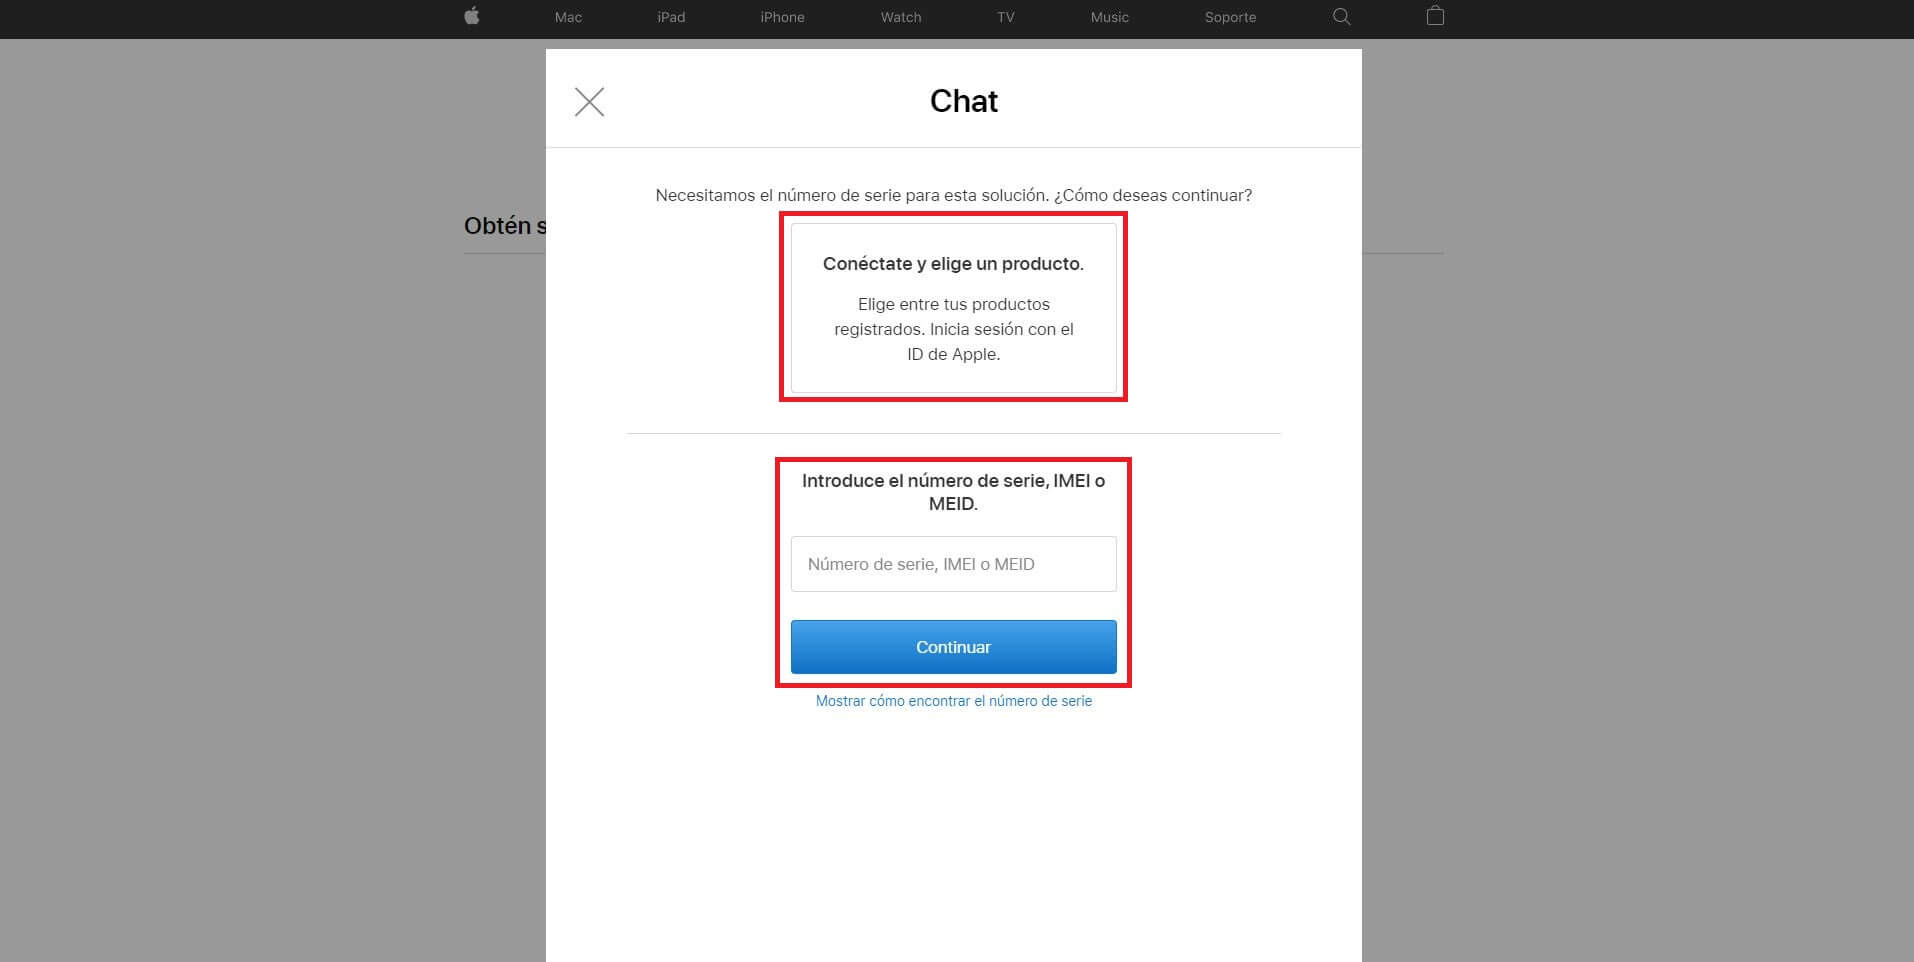 accede al chat de apple para hablar con un agente del servicio tecnico